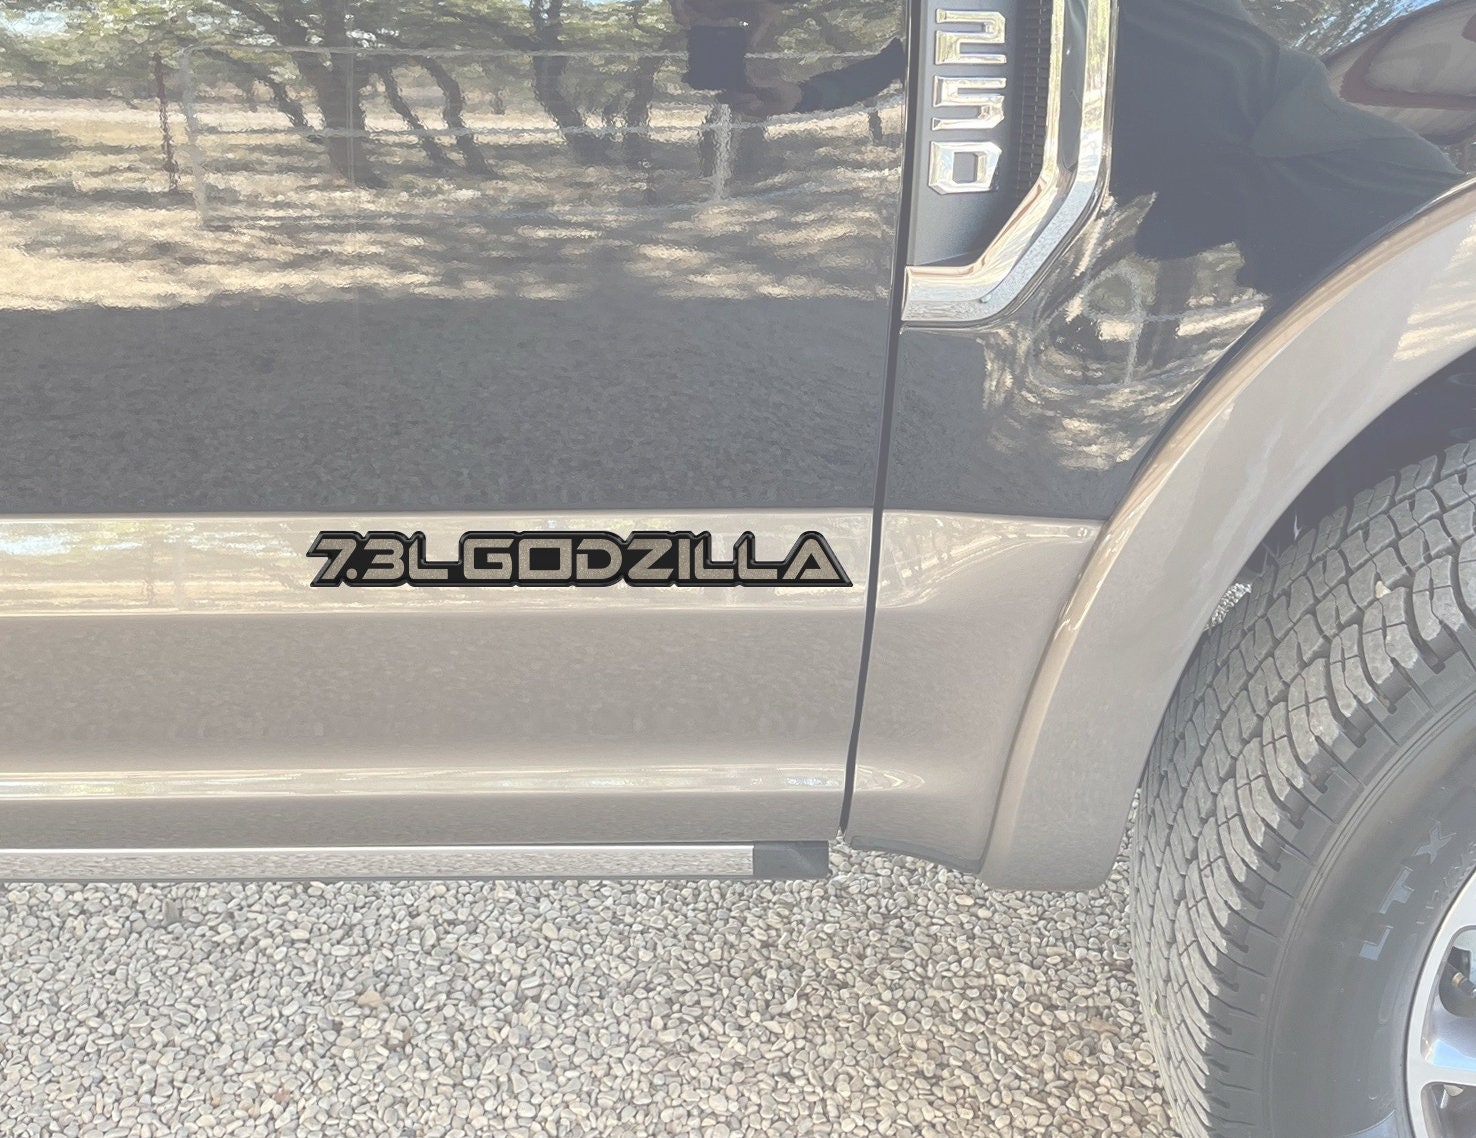 Godzilla 7.3L Decal/Sticker 4x4